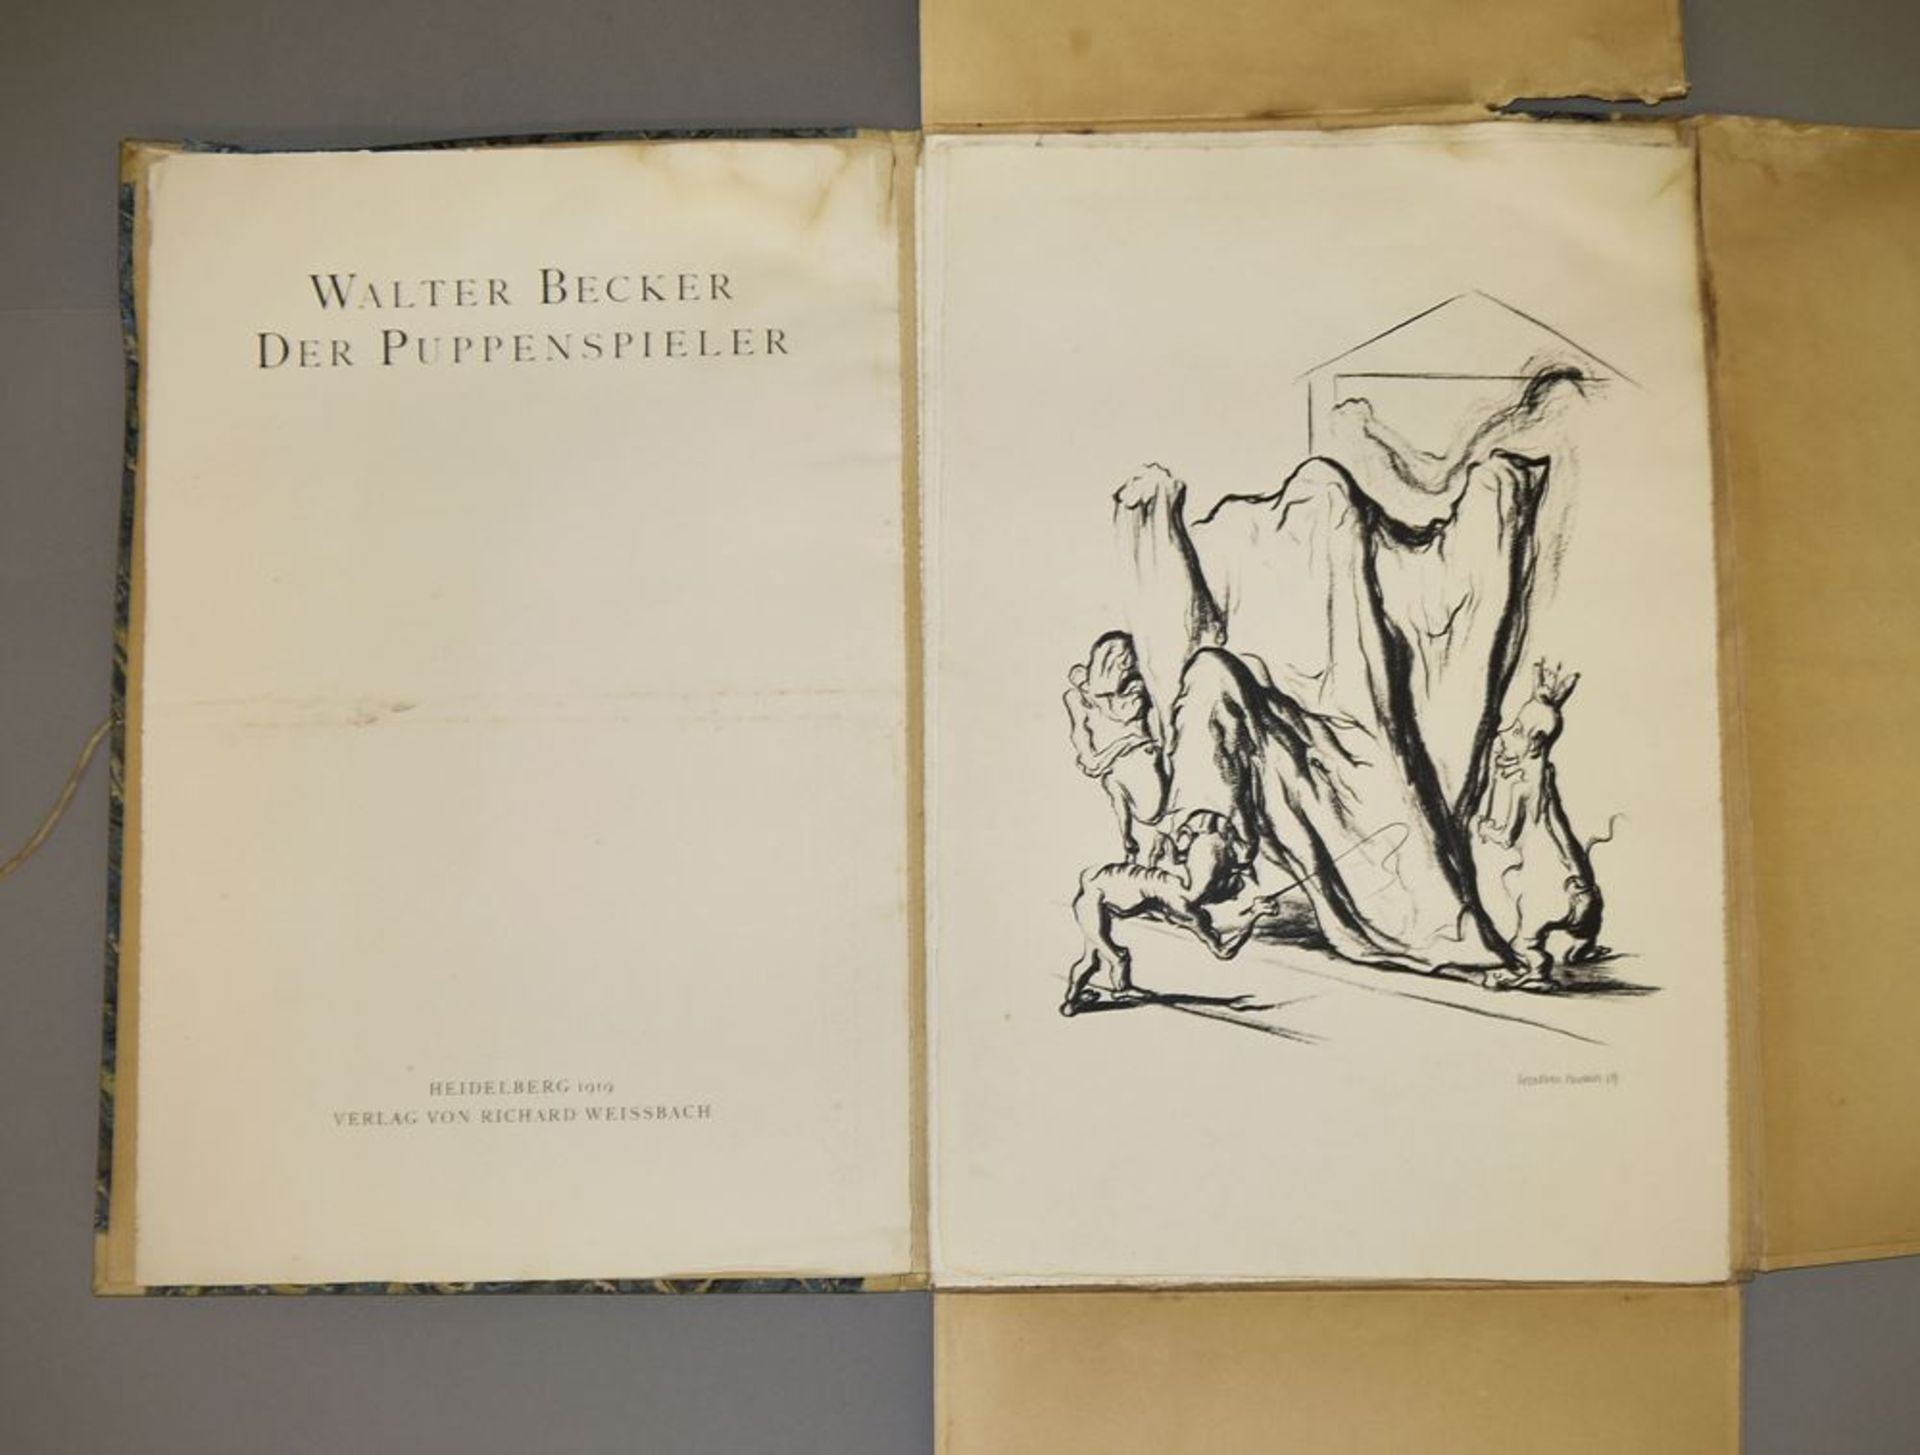 Walter Becker, "Der Puppenspieler", Mappe mit 10 Lithographien, 1919